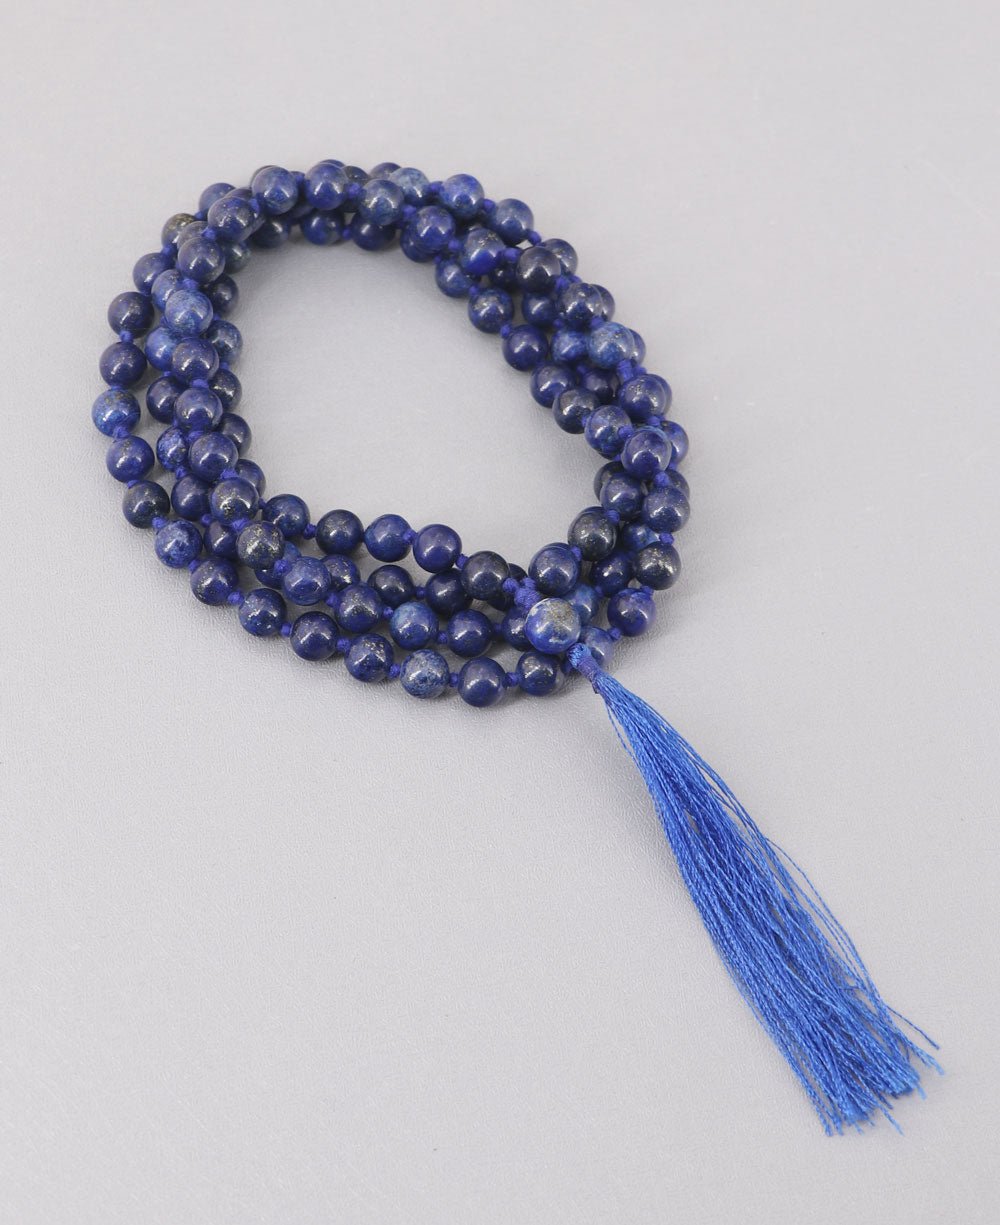 108 Beads Lapis Meditation Mala, Knotted by Buddha Groove - Prayer Beads